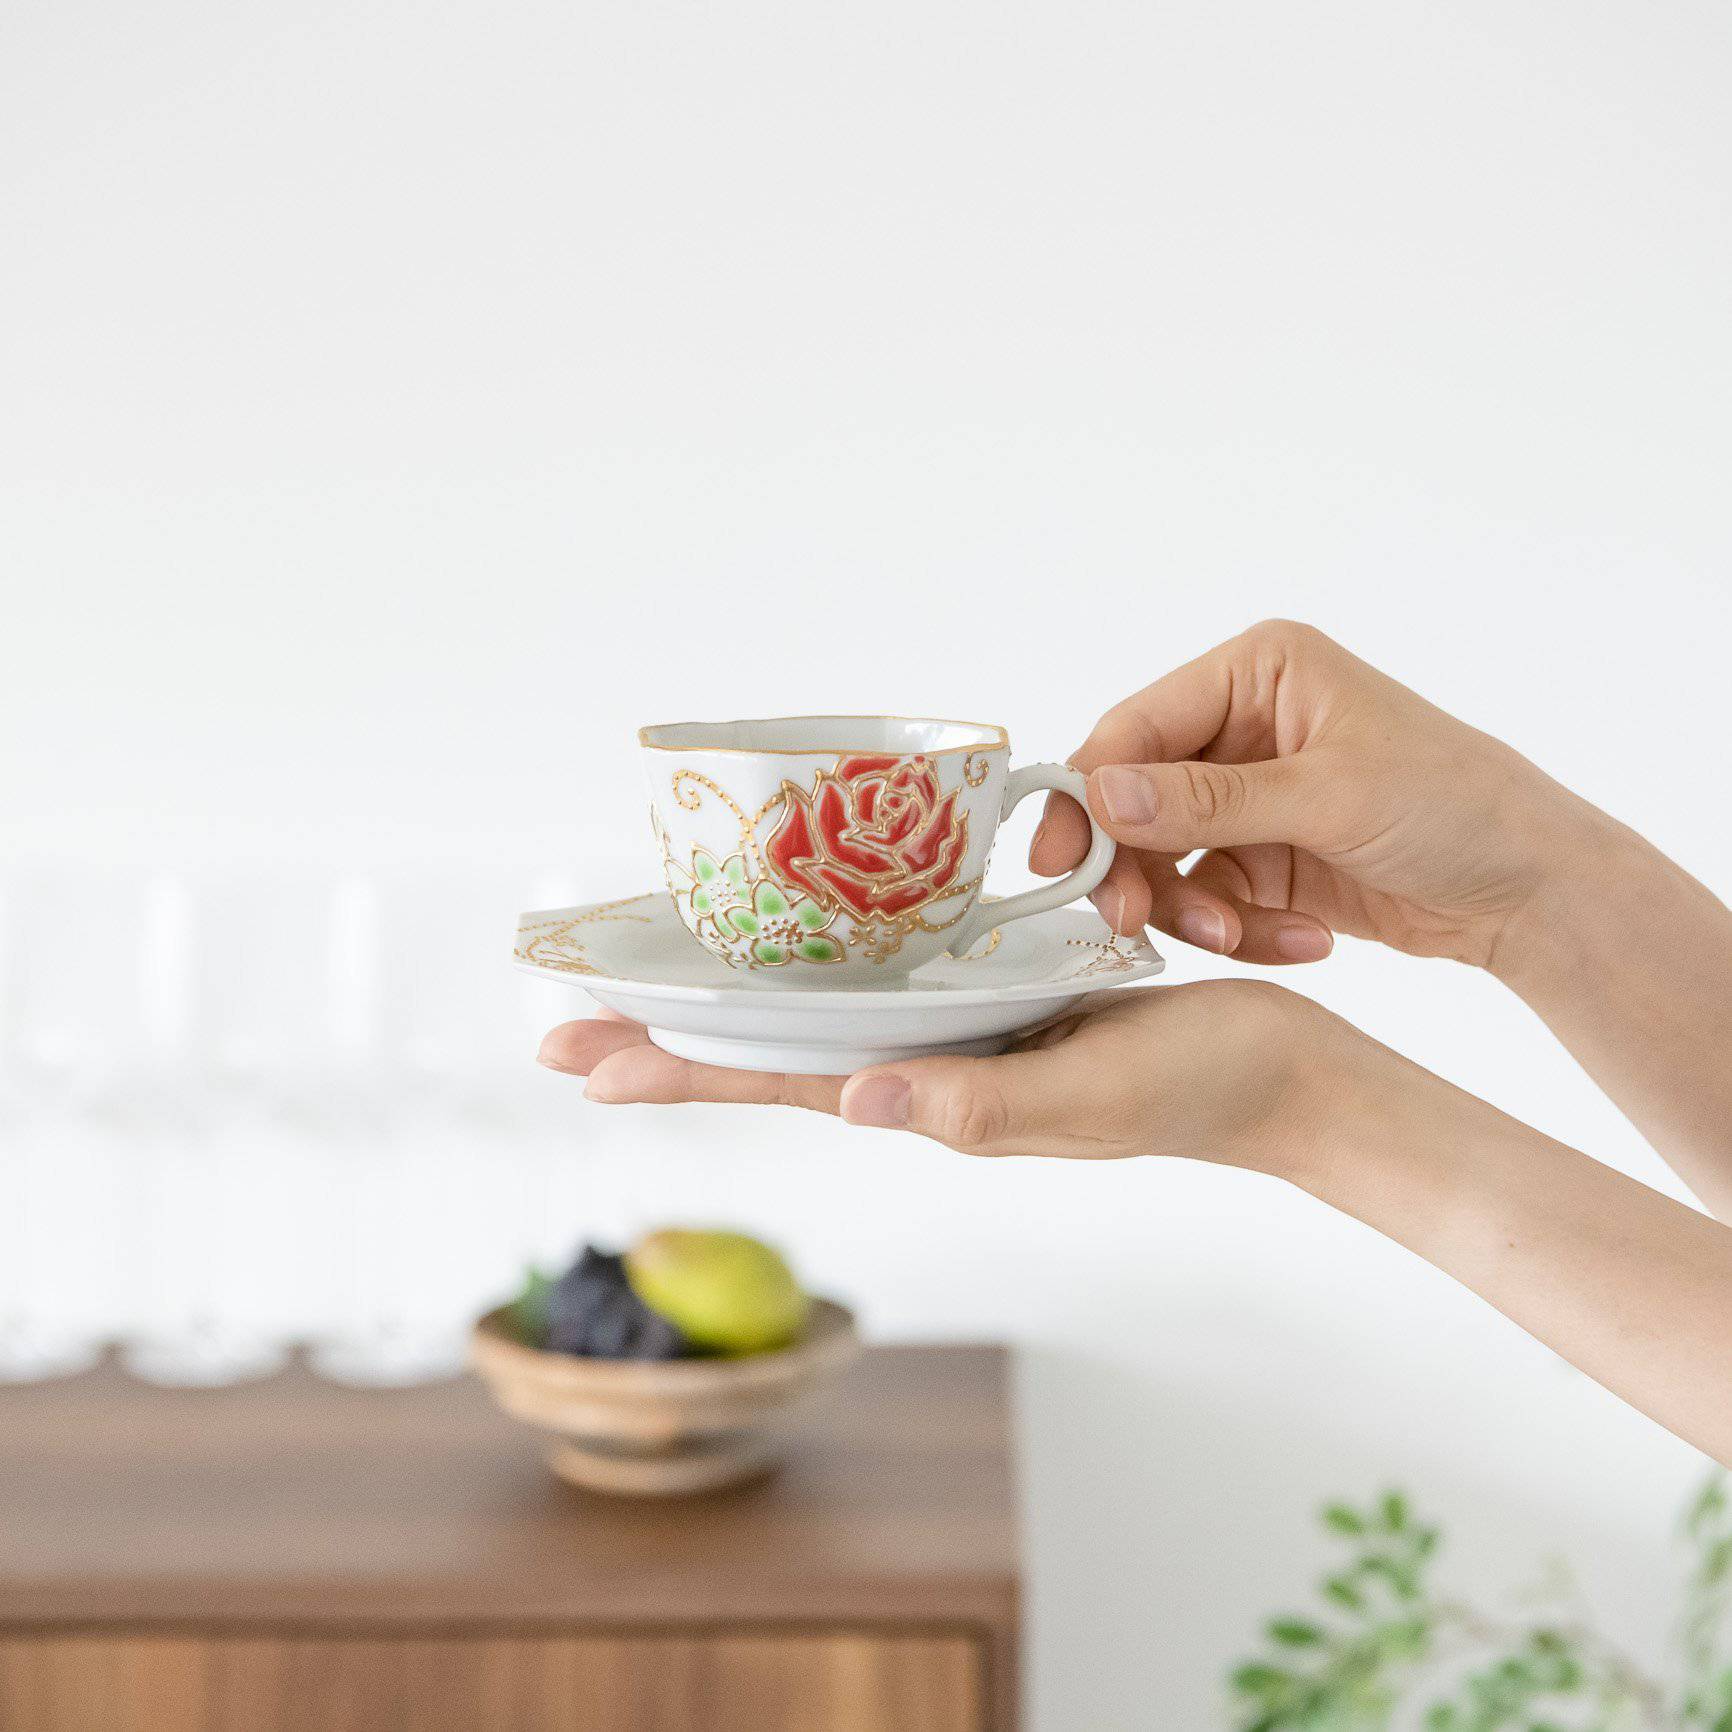 Dekomori Roses Kutani Cup and Saucer - MUSUBI KILN - Handmade Japanese Tableware and Japanese Dinnerware